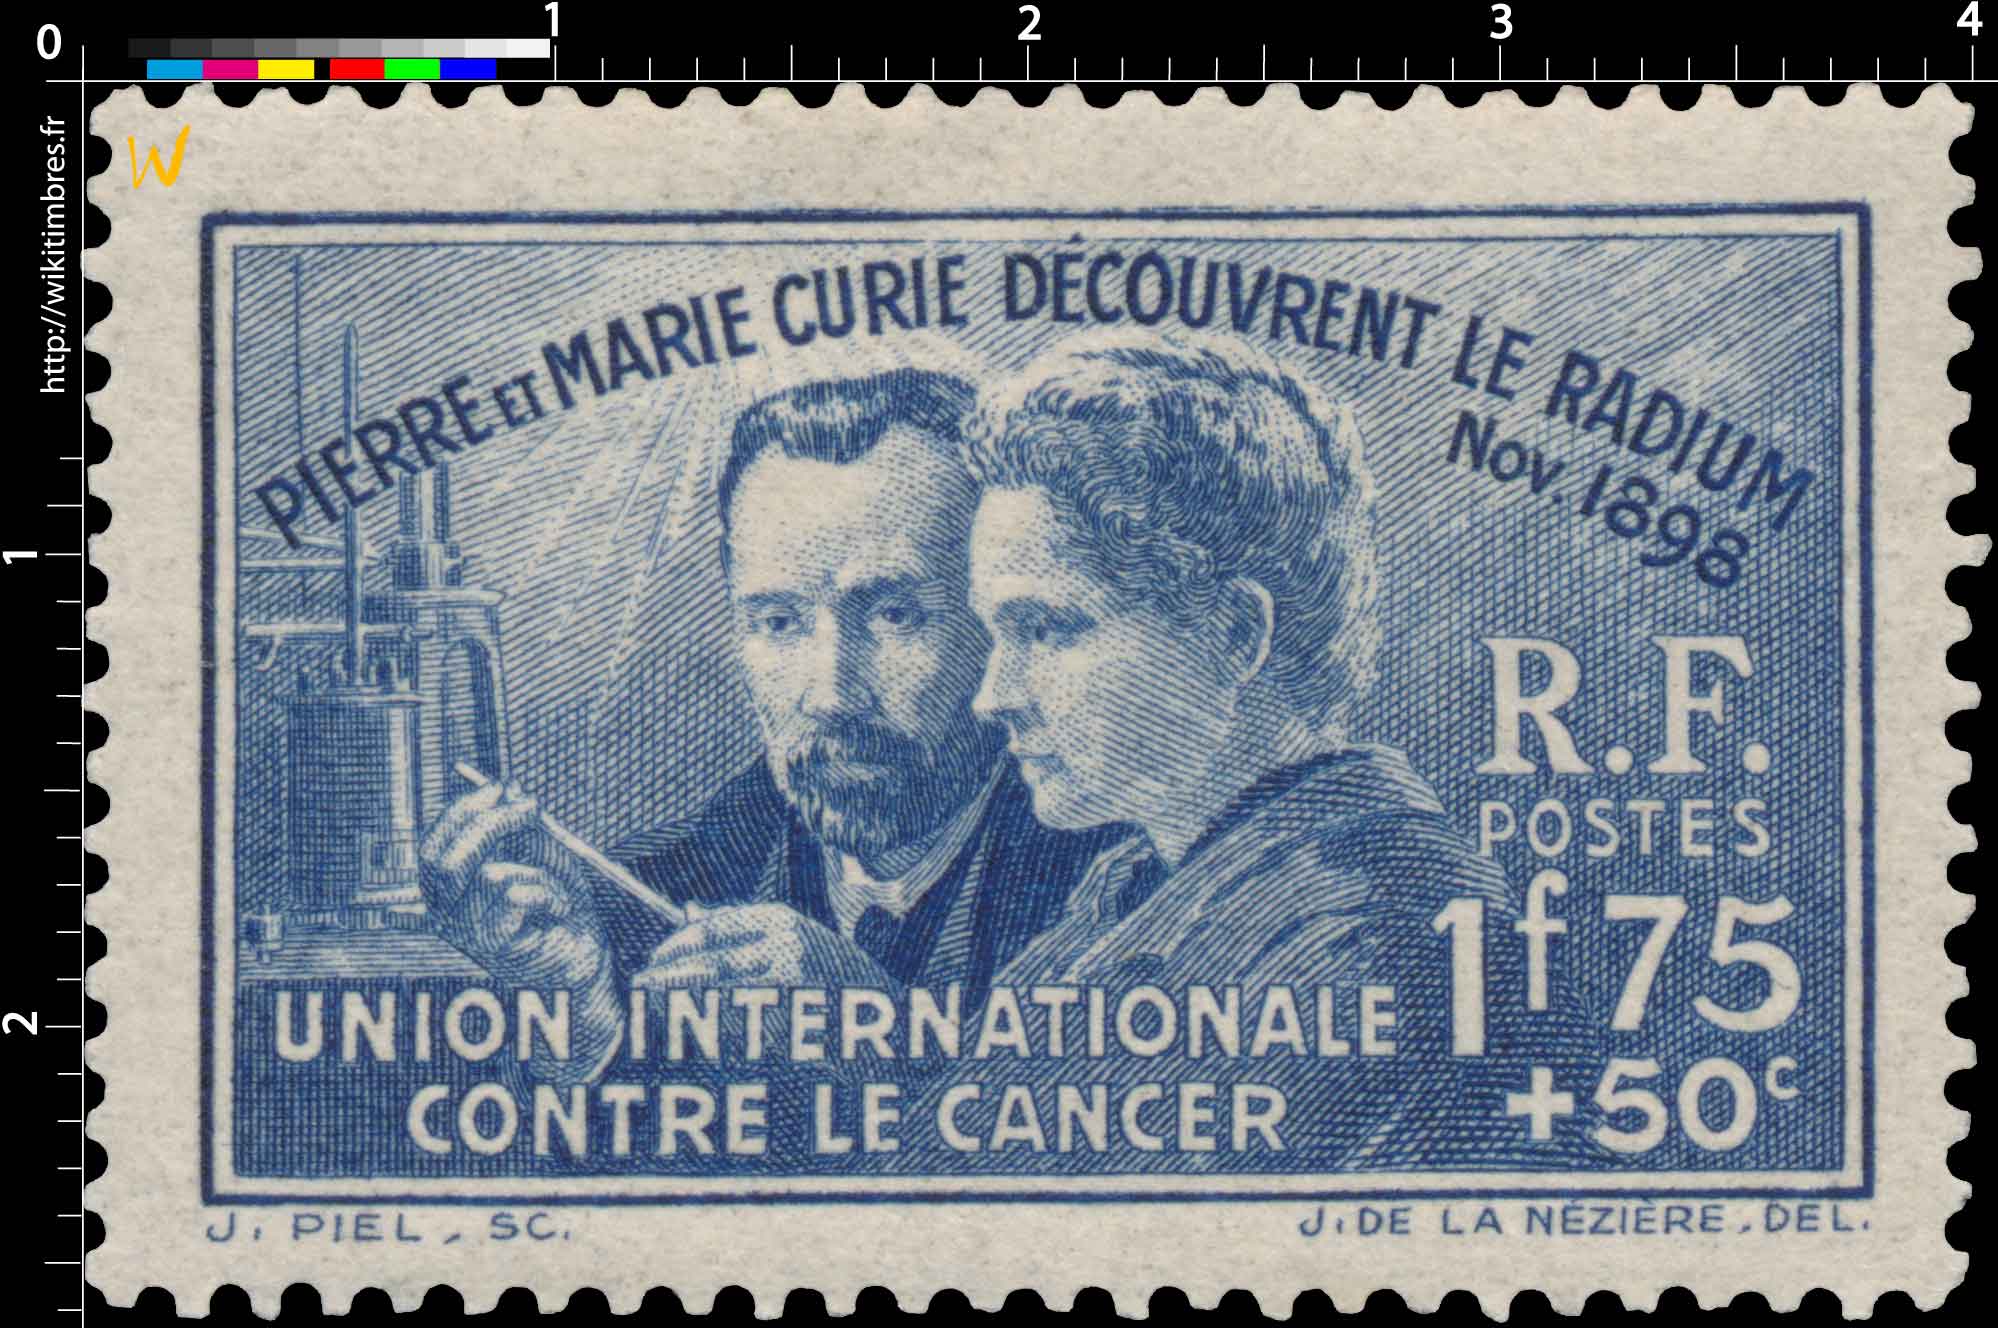 PIERRE ET MARIE CURIE DÉCOUVRENT LE RADIUM Nov.1898 UNION INTERNATIONALE CONTRE LE CANCER